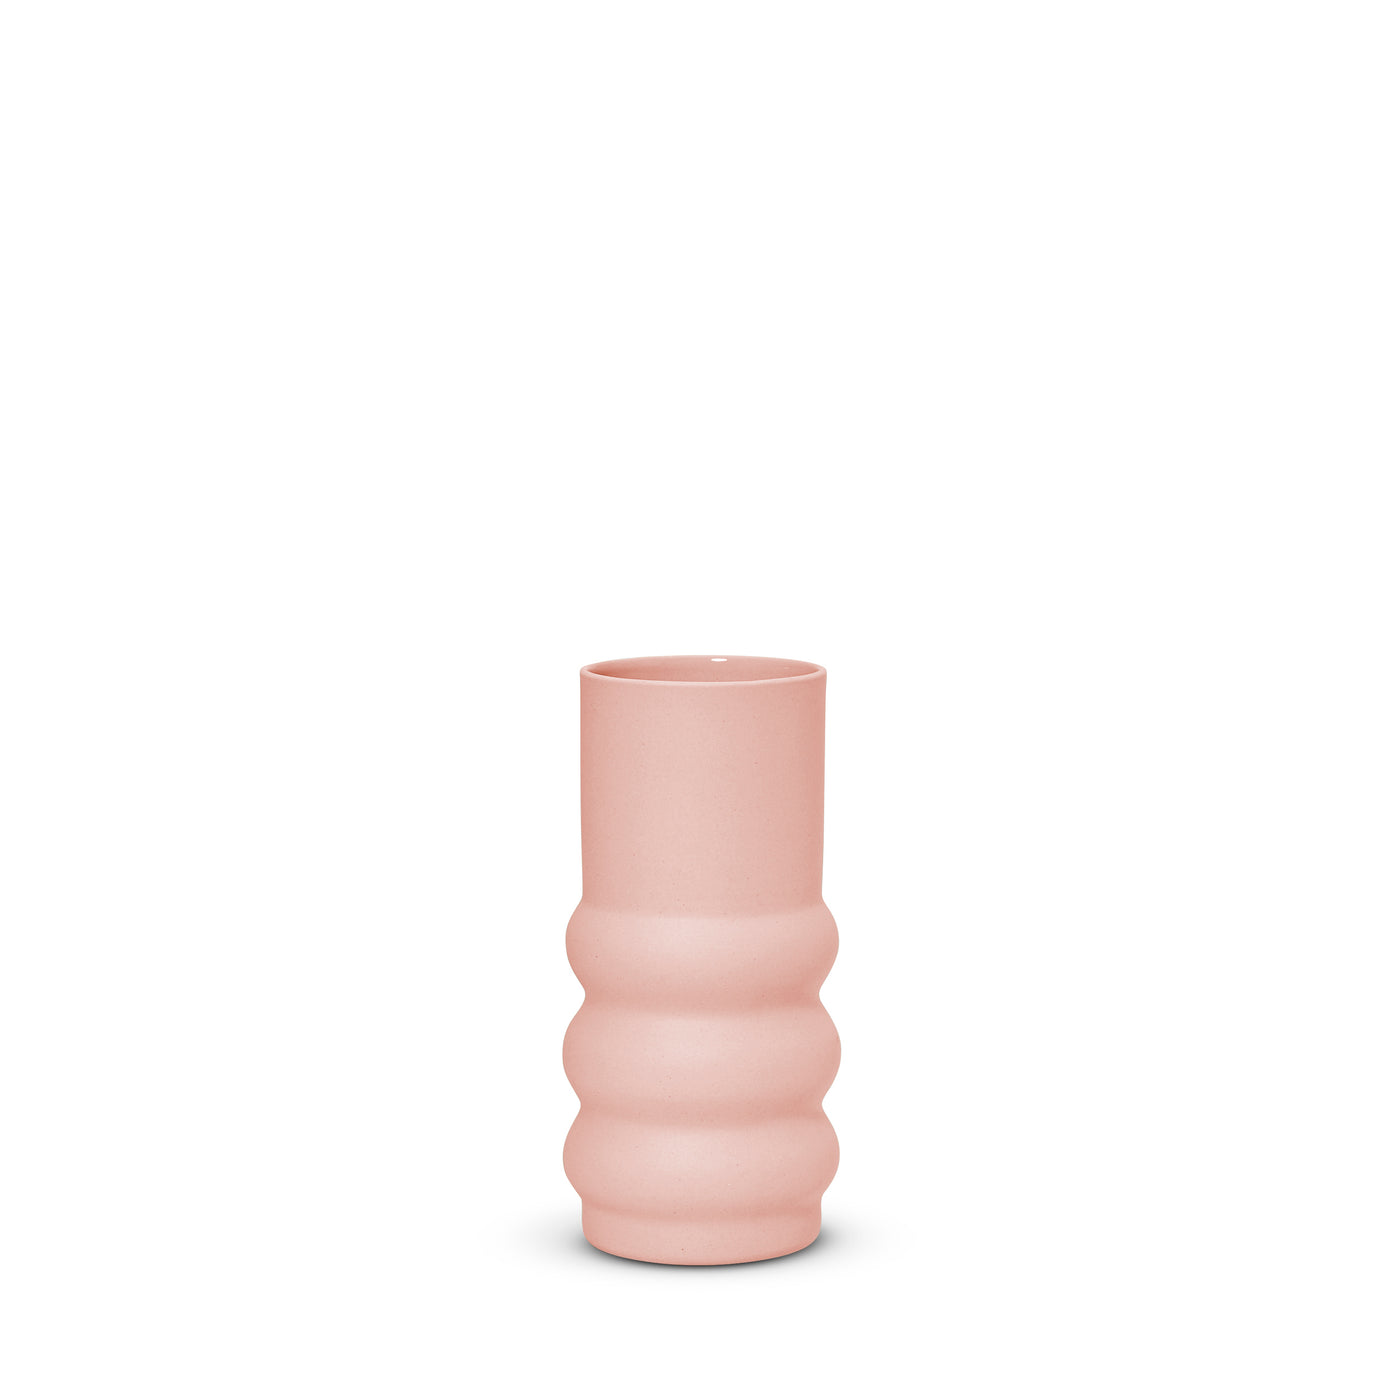 Cloud Haus Vase Icy Pink (S)